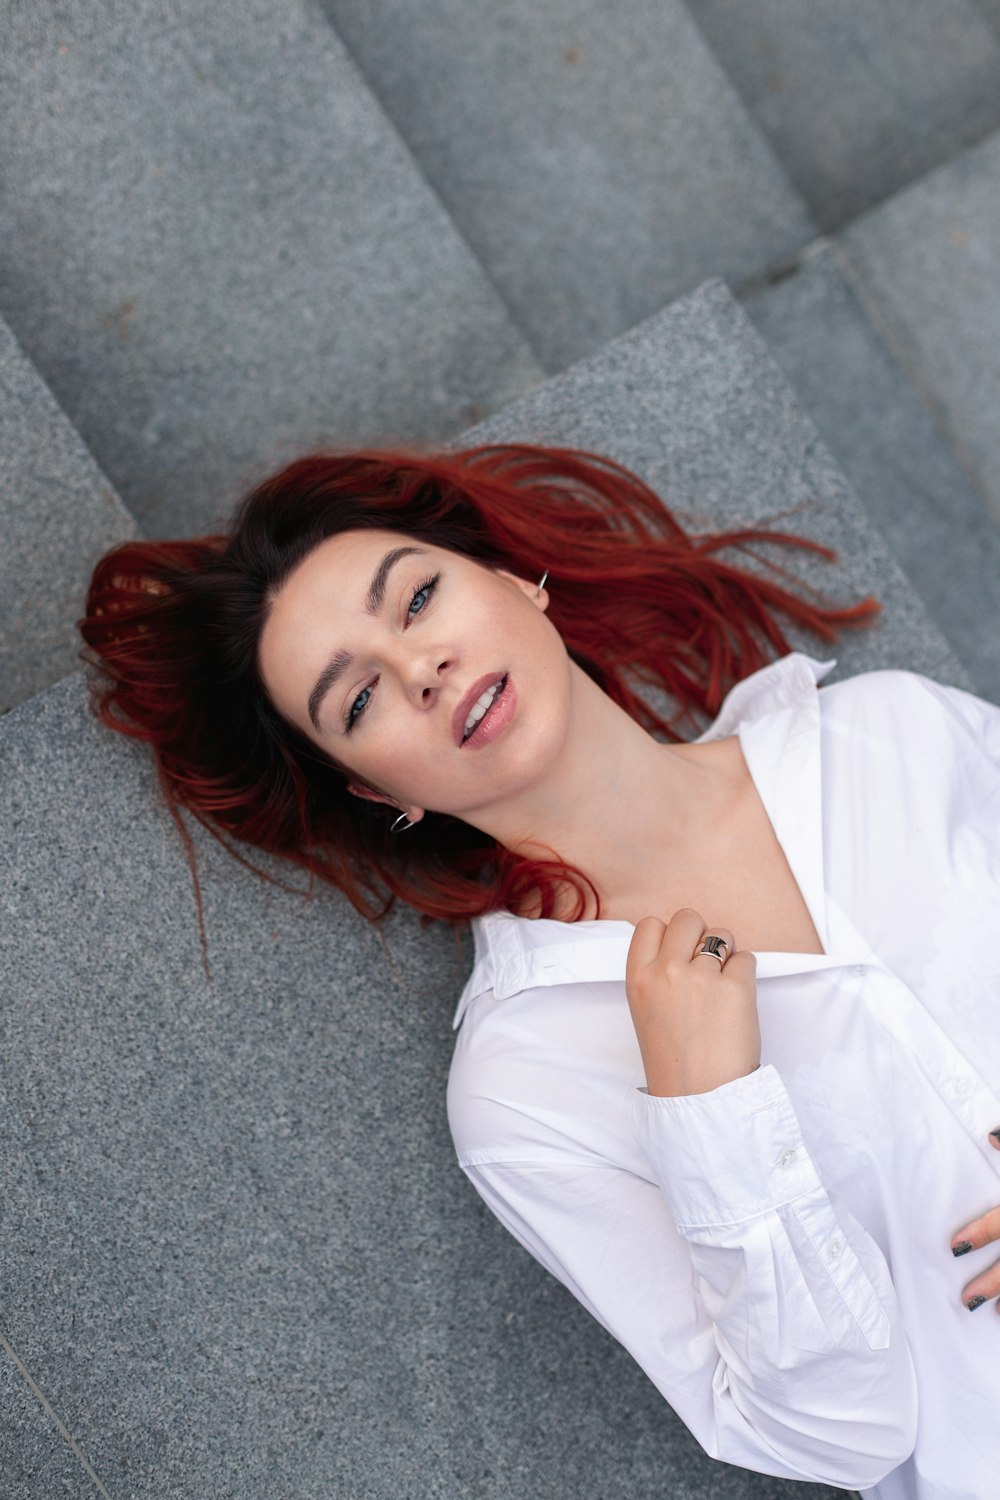 Une femme aux cheveux roux est allongée sur le sol